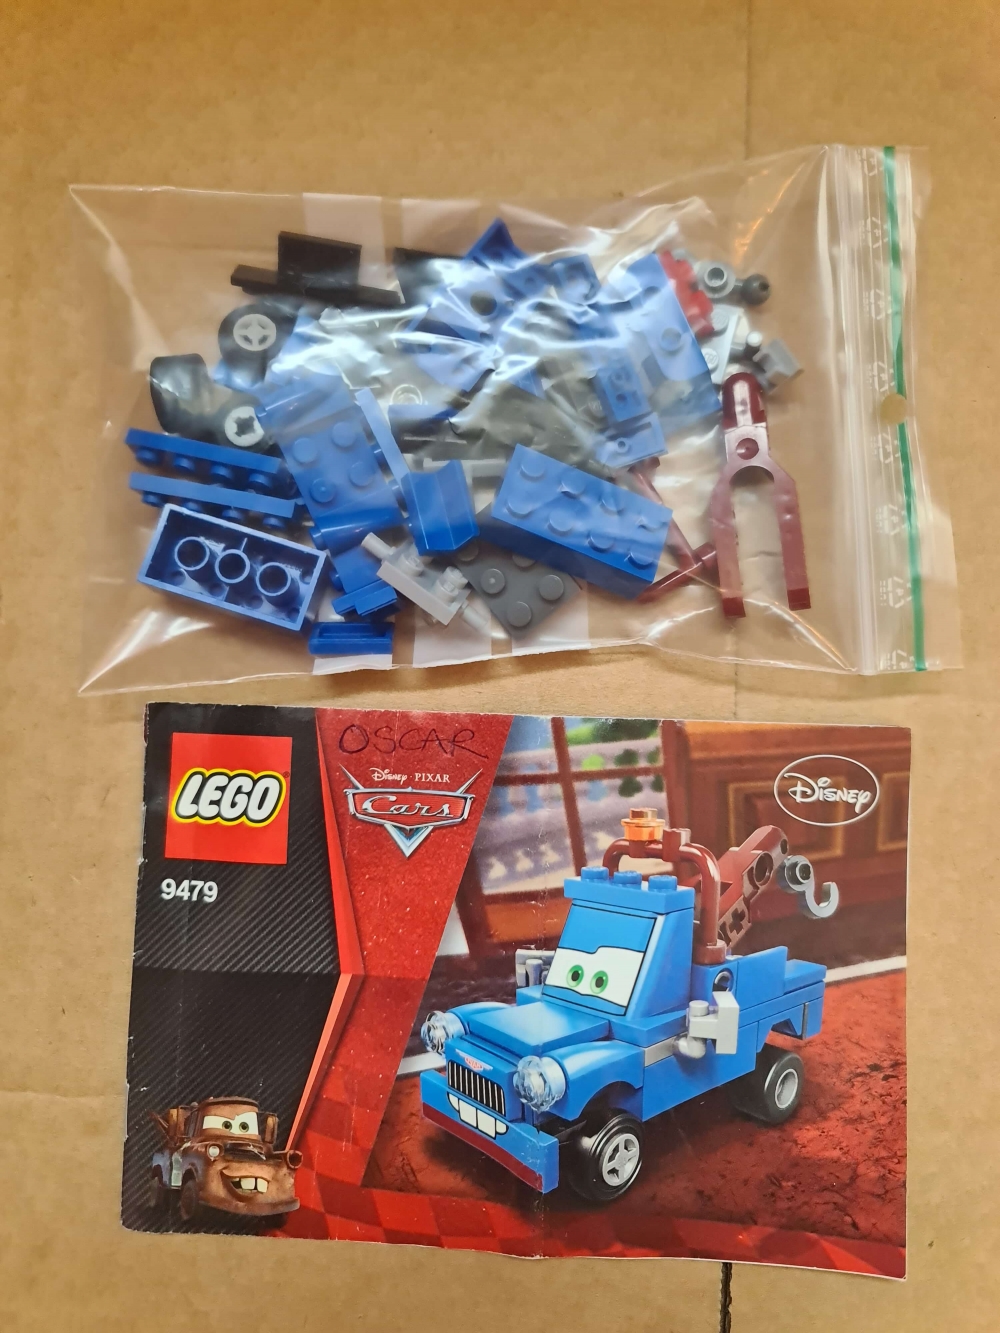 Sett 9479 fra Lego Cars : Cars 2 serien.
Meget pent.
Komplett med manual.